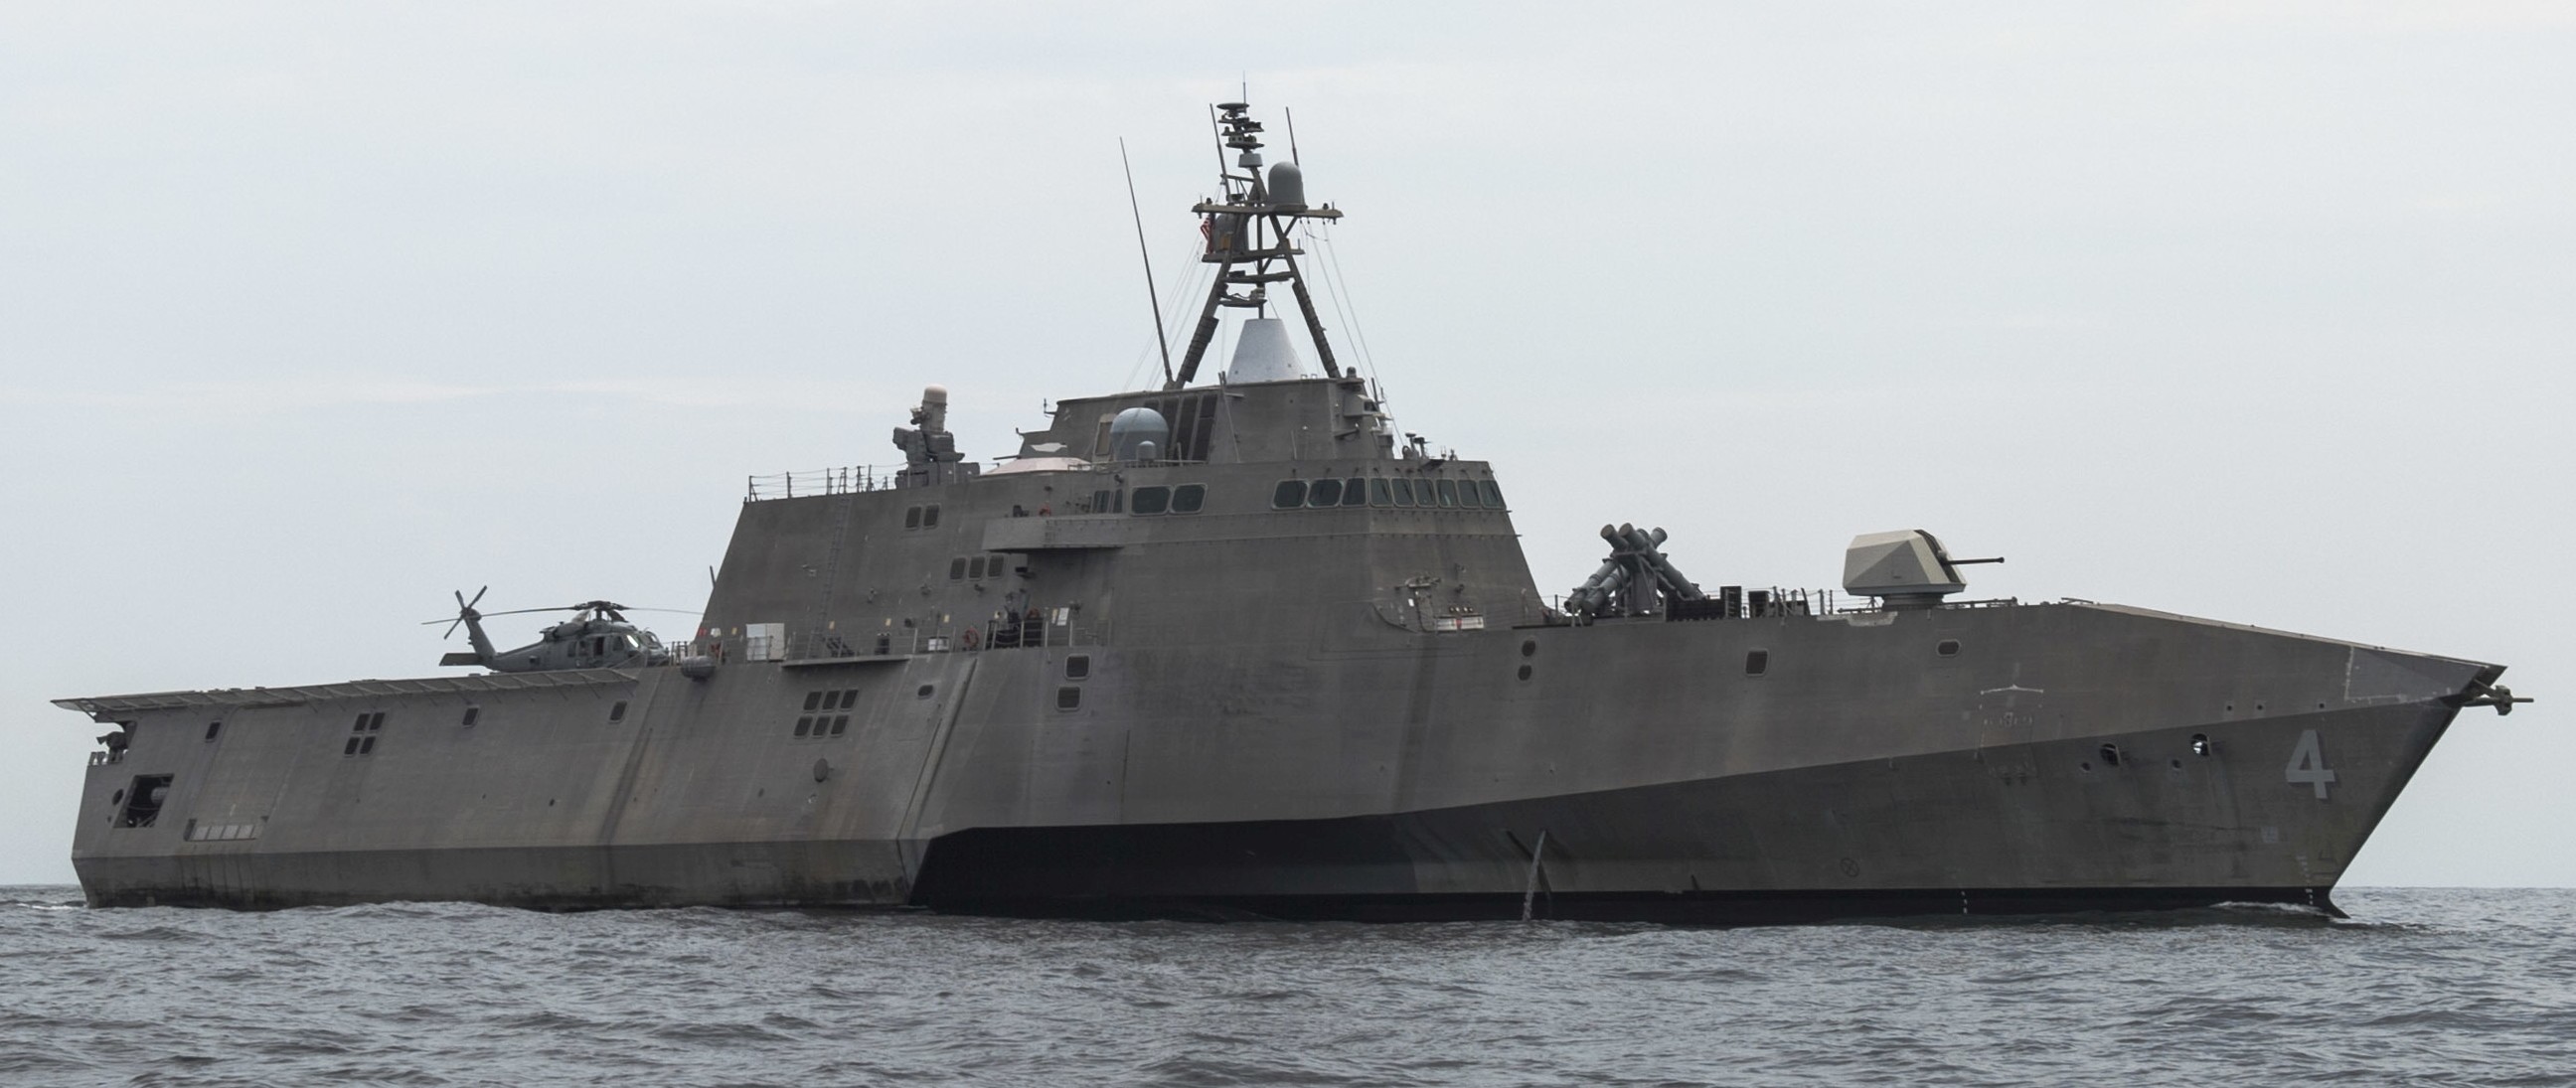 lcs-4 uss coronado independence class littoral combat ship us navy 24 malaysia